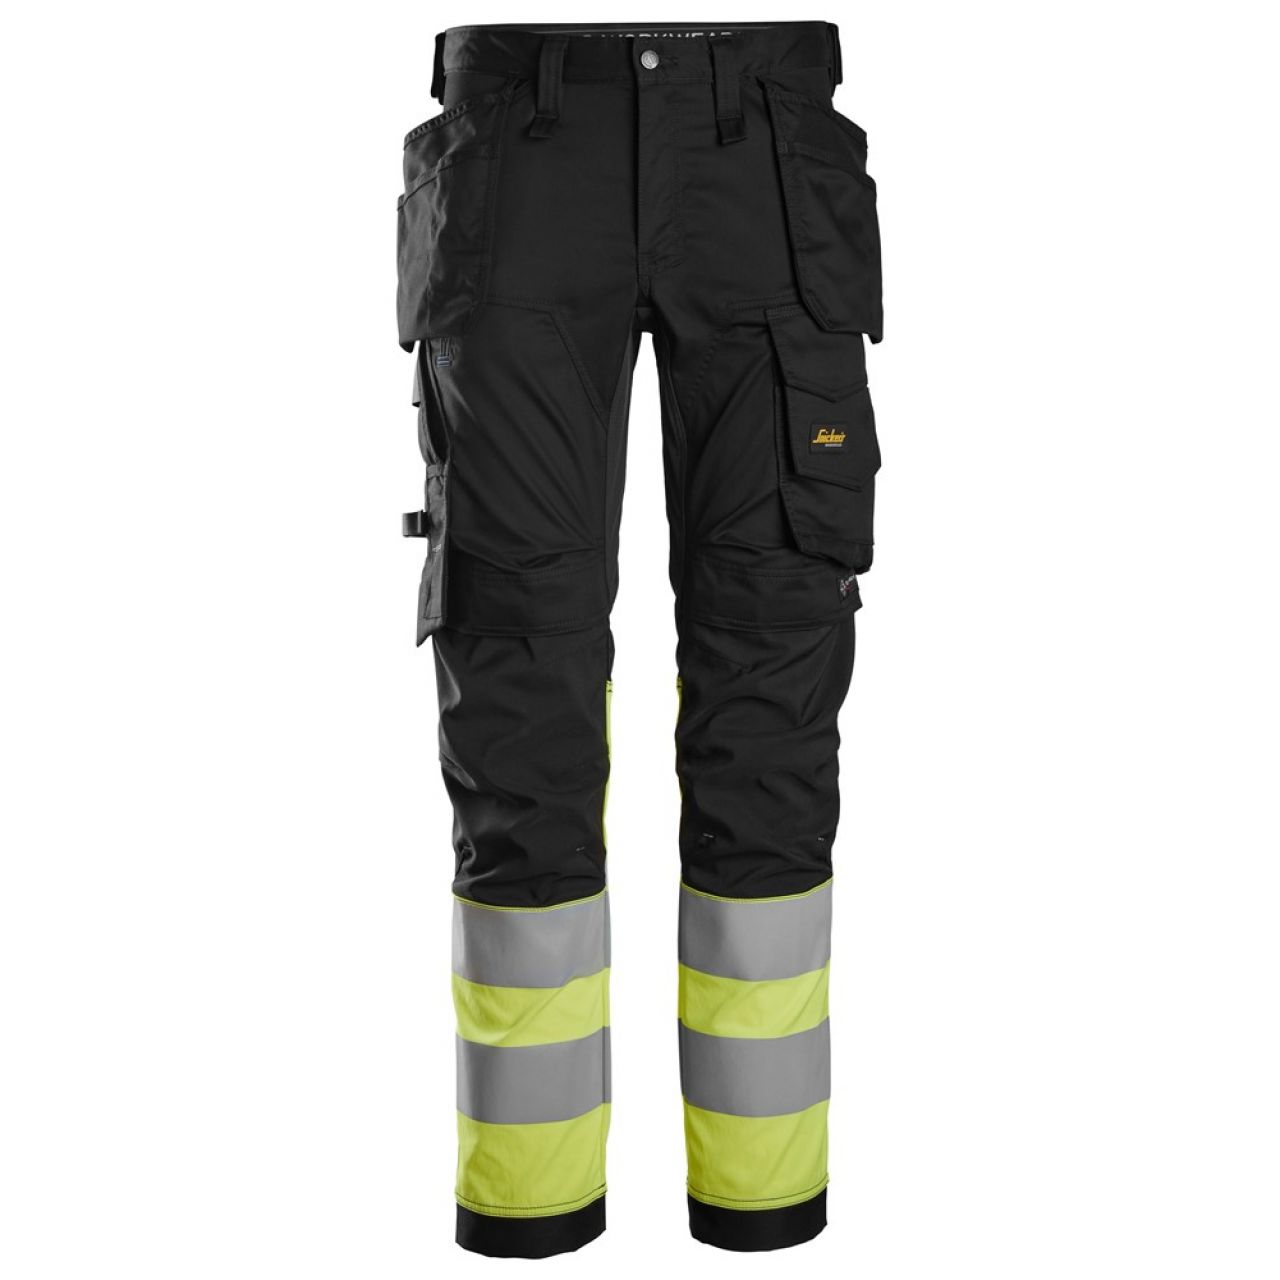 6234 Pantalones largos de trabajo elásticos de alta visibilidad clase 1 con bolsillos flotantes negro-amarillo talla 256